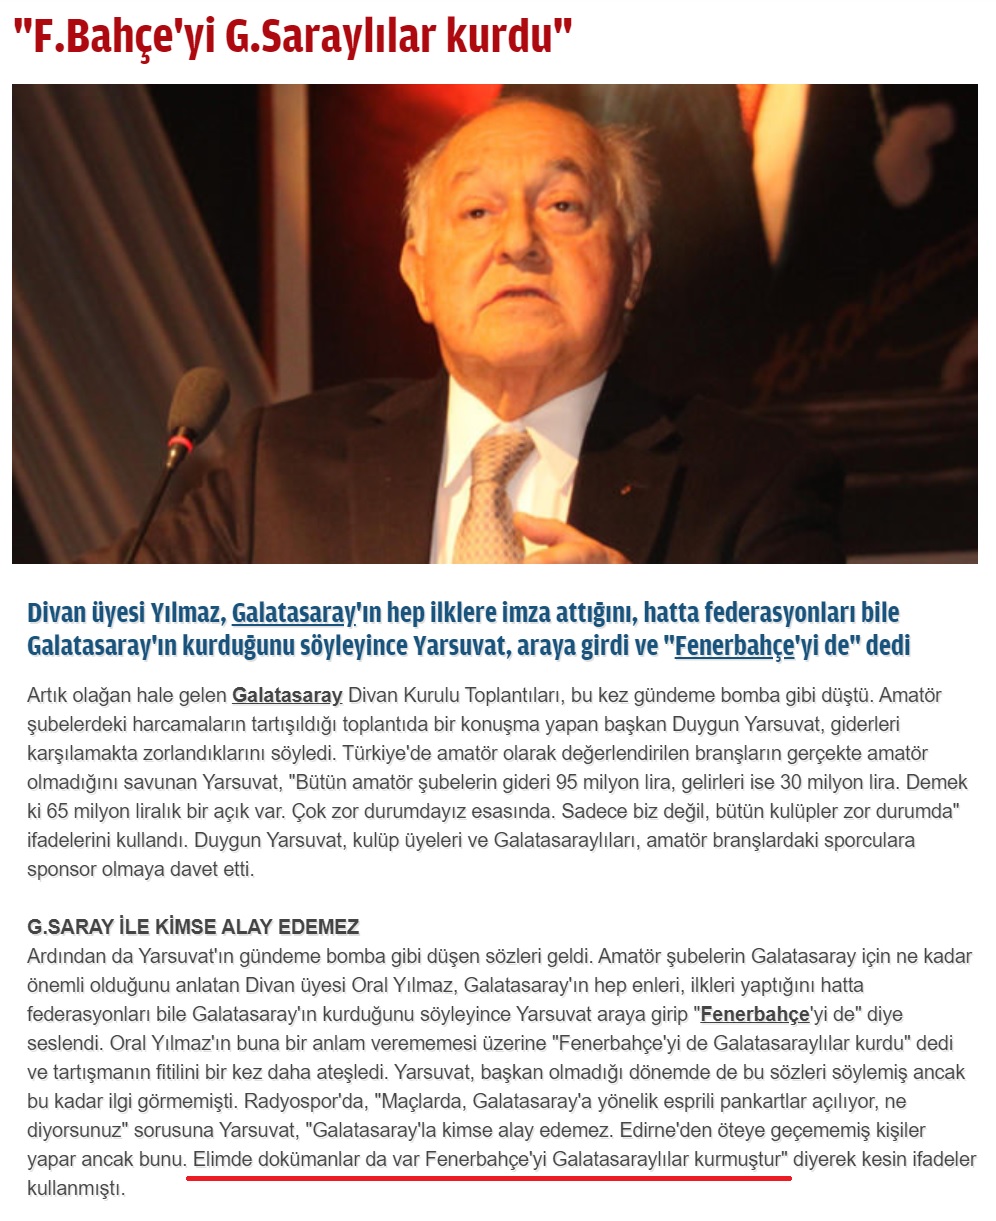 Galatasaray SK eski Başkanı Duygun Yarsuvat Fenerbahçe'yi Galatasaraylıların kurduğunu iddia etmişti